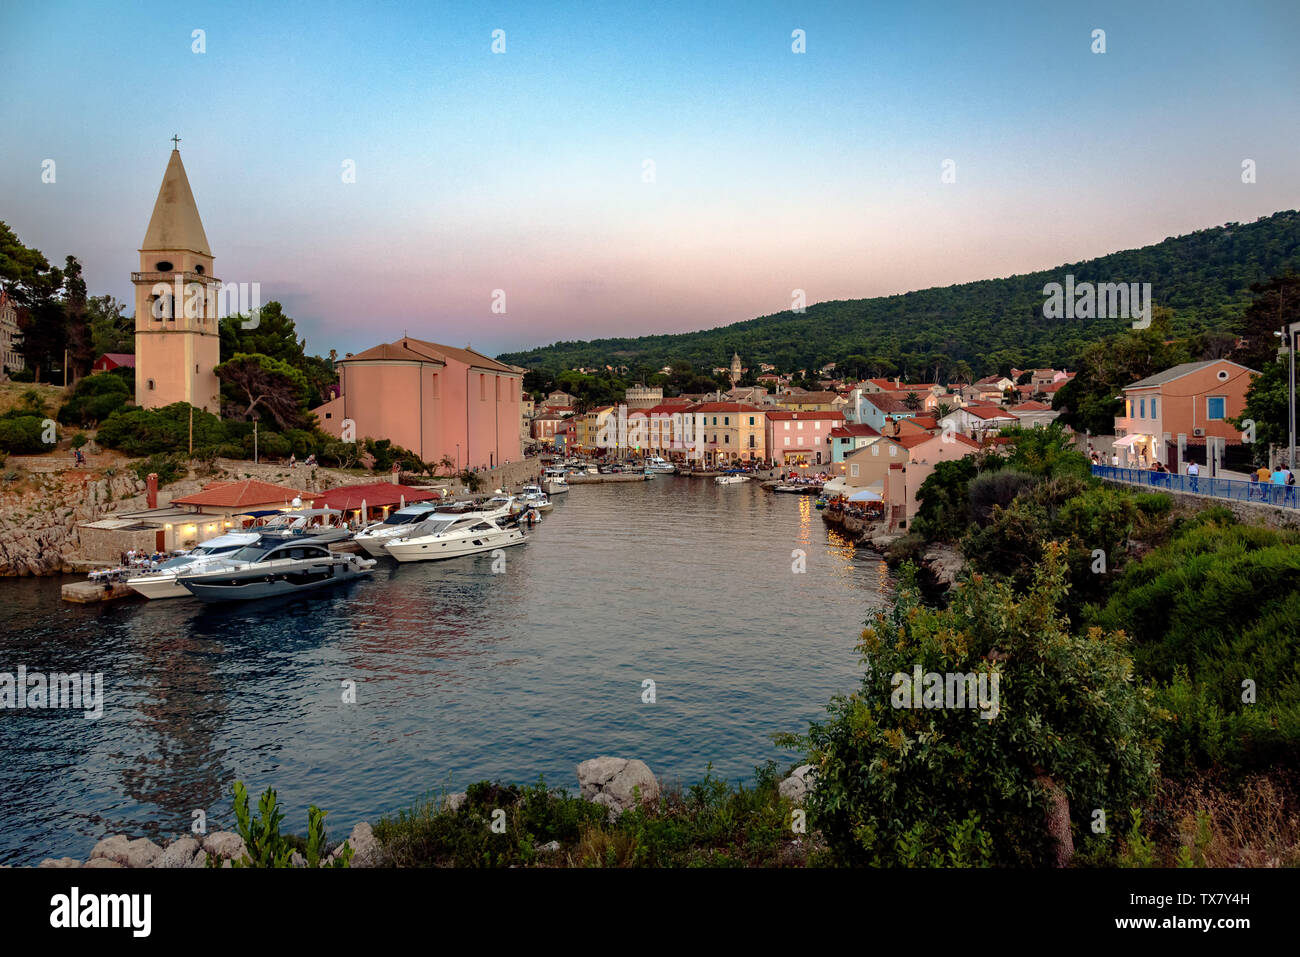 La ville et le port de plaisance de Veli Losinj, Croatie, lors d'une chaude soirée d'été Banque D'Images